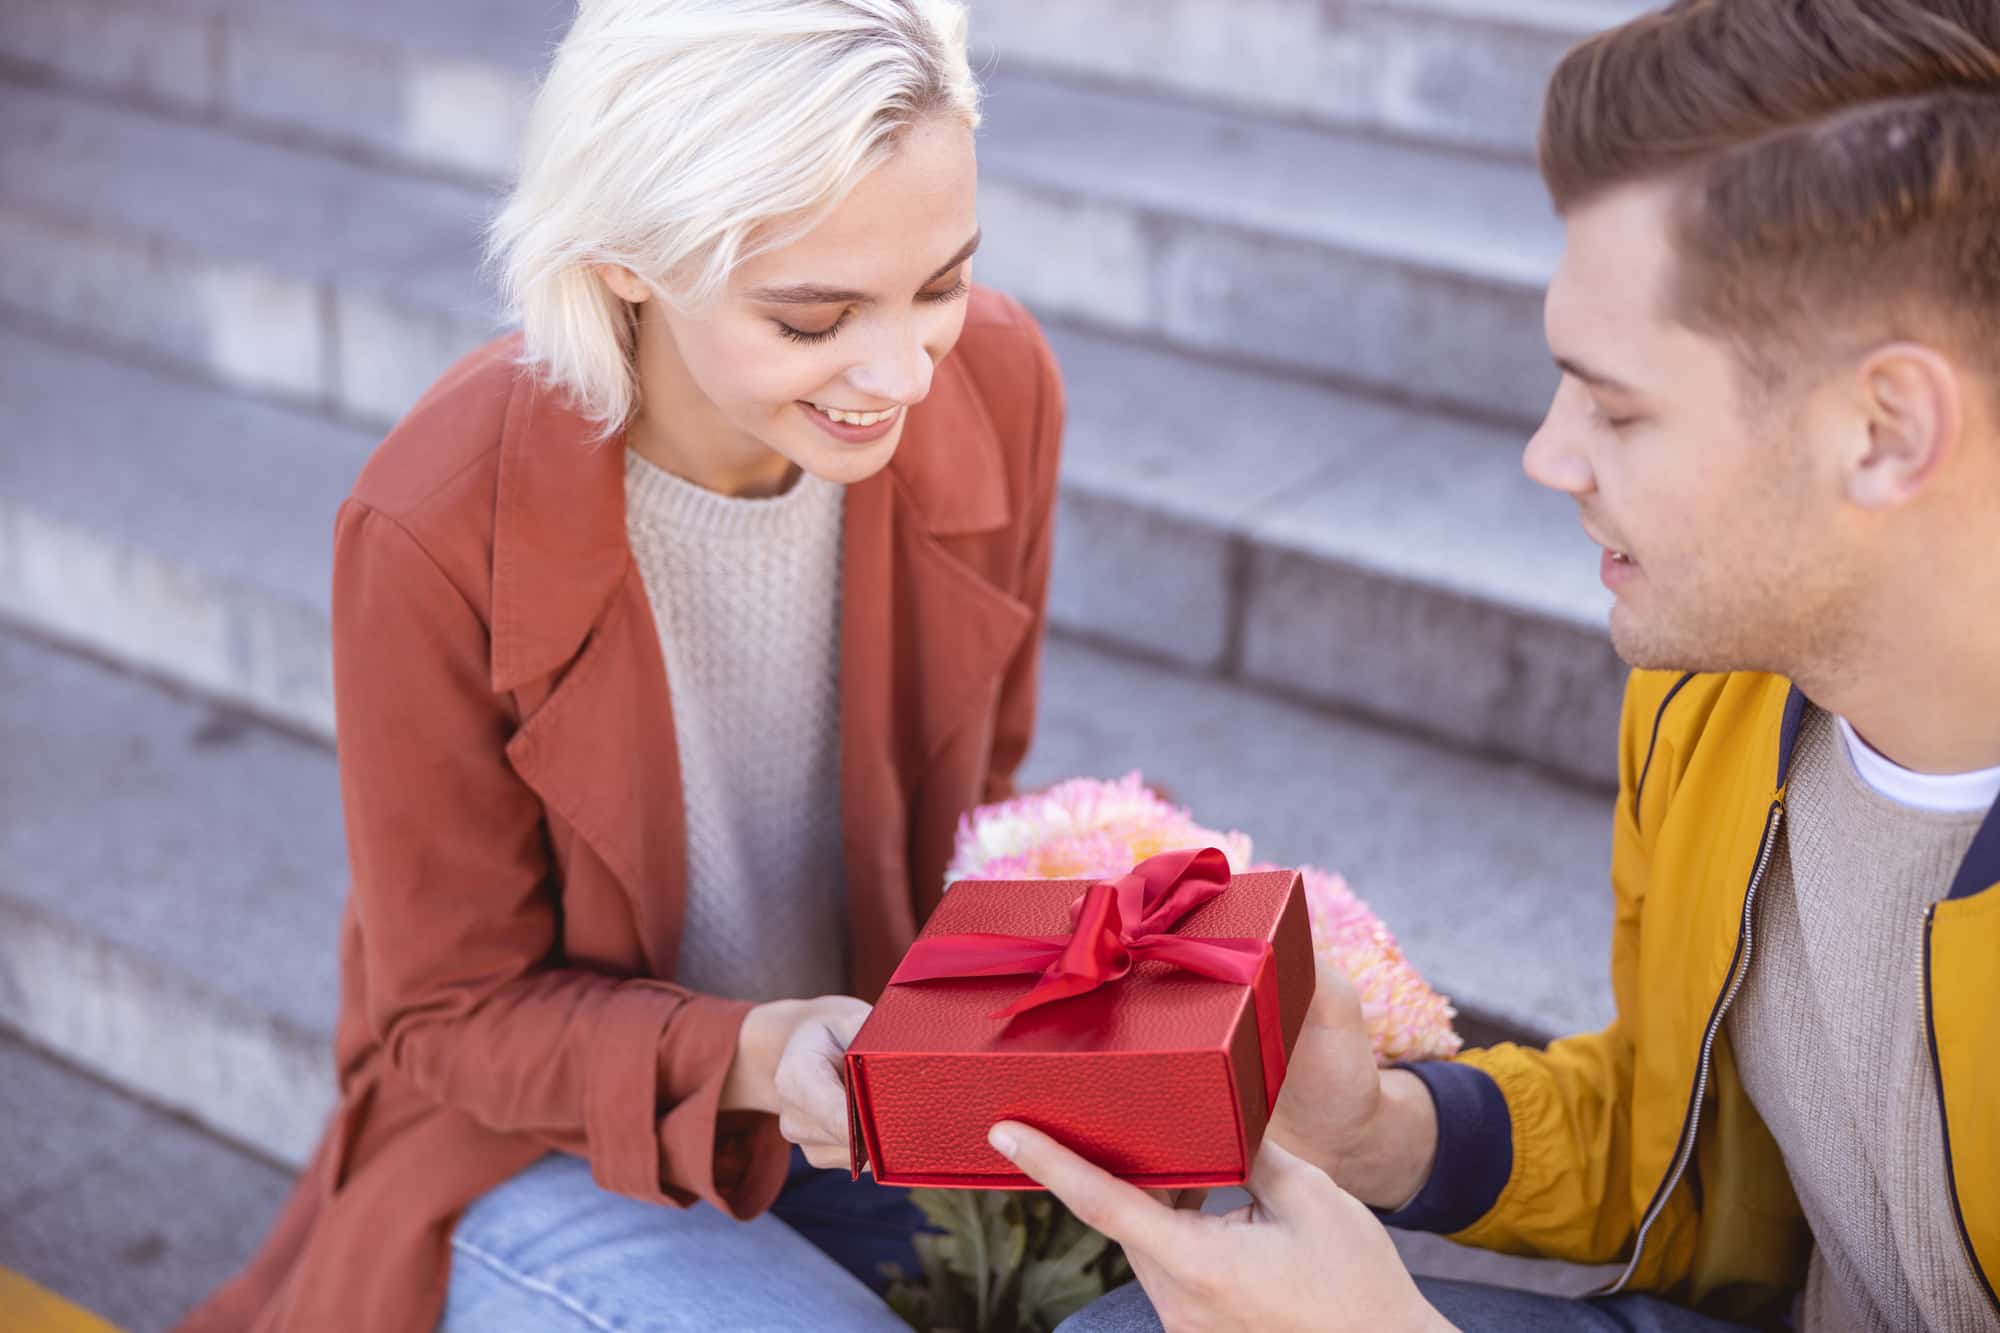 Что подарить девушке: идеи и подборки подарков